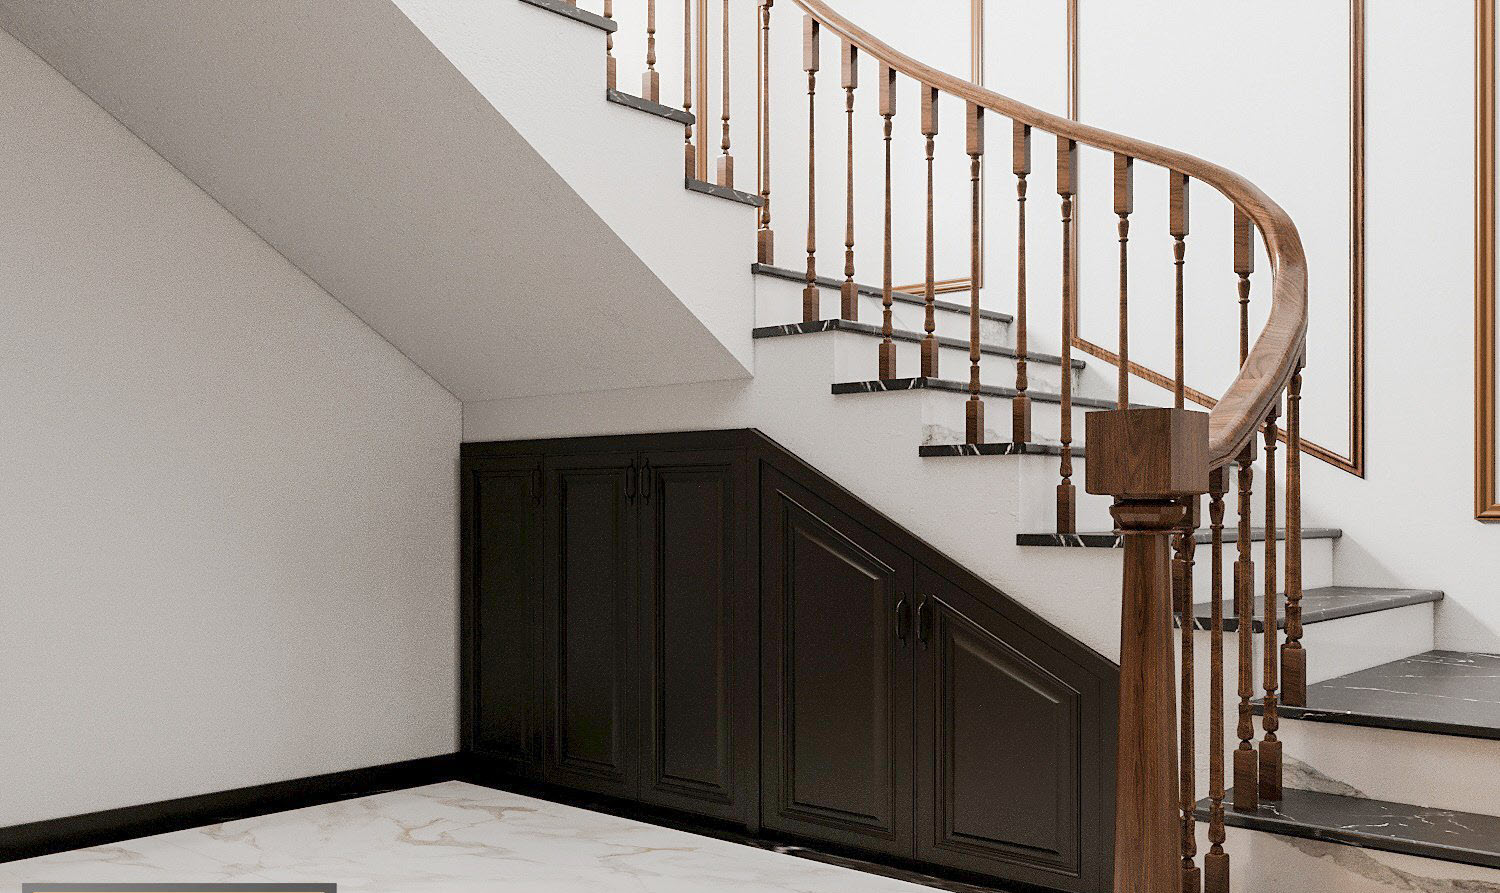 Cầu thang dẫn lên tầng trên ngôi nhà với thiết kế bậc gỗ thông thoáng. Gầm cầu thang được tận dụng làm kho chứa đồ. Cửa gỗ màu đen giúp tăng chiều sâu cho không gian.